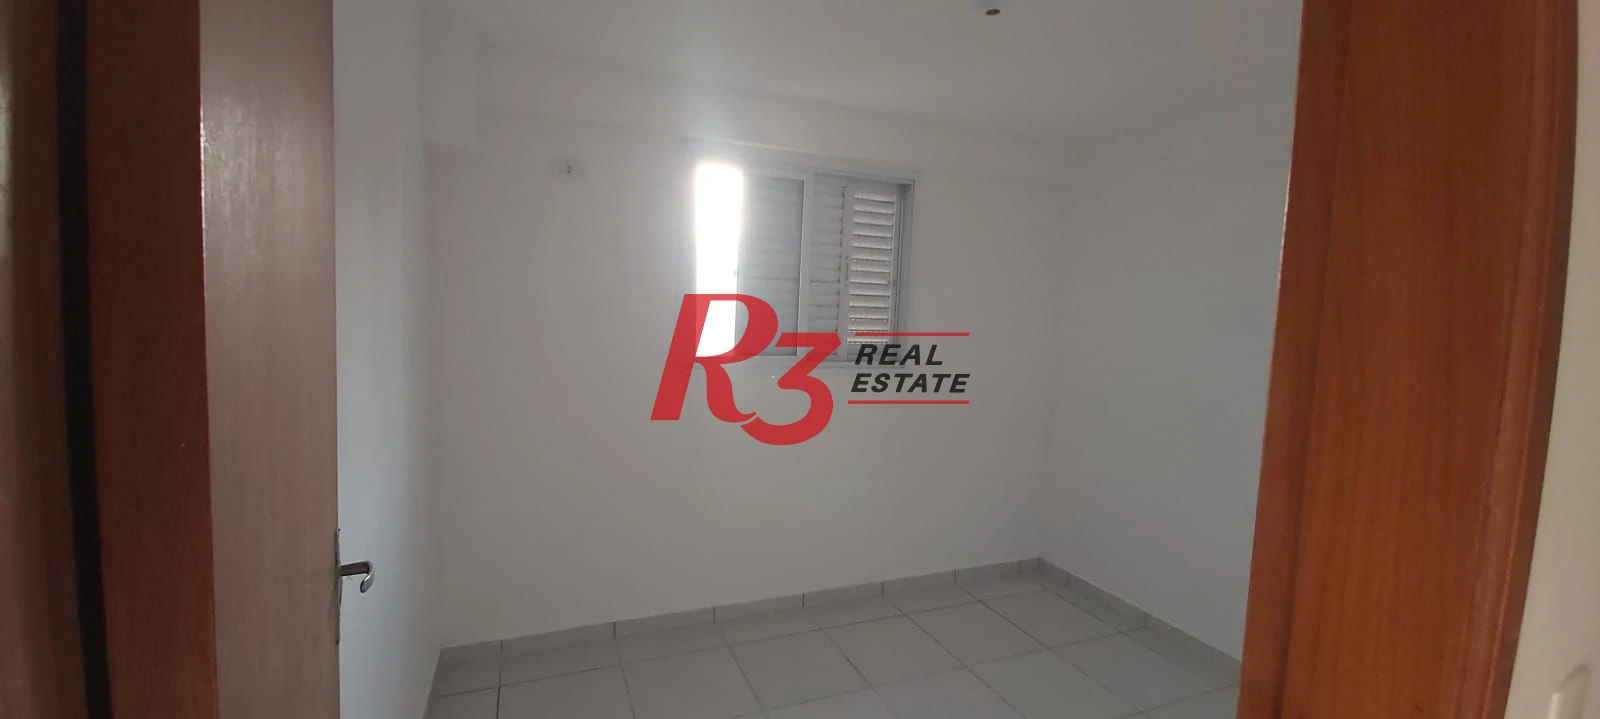 Apartamento com 2 dormitórios à venda, 45 m² por - Jardim Guassu - São Vicente/SP